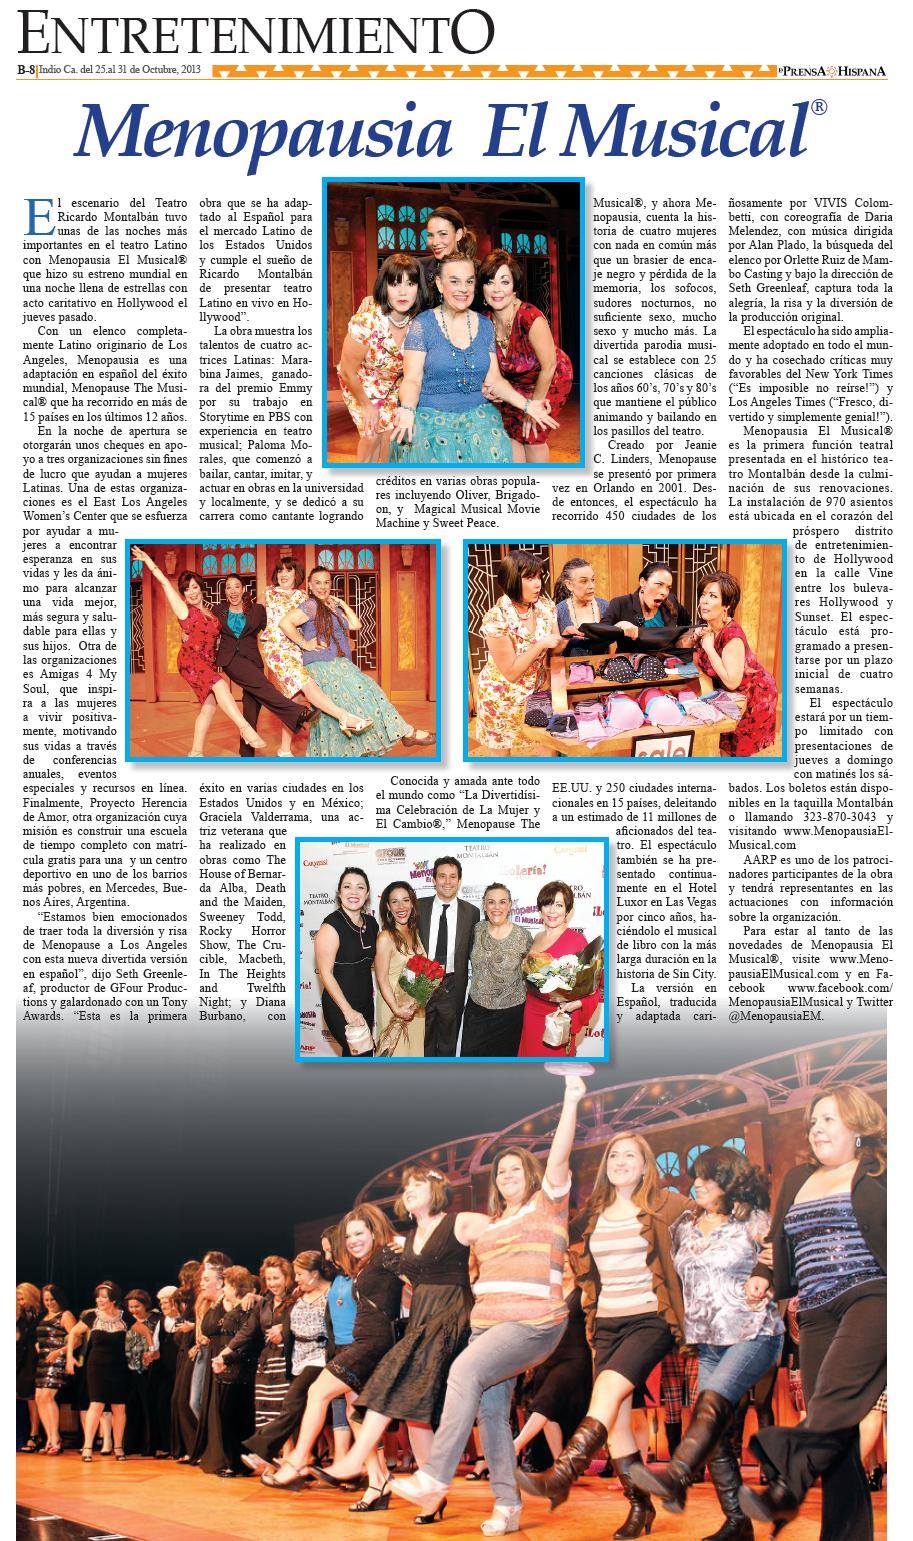 La Prensa Newspaper. Menpausia El Musical. Review.